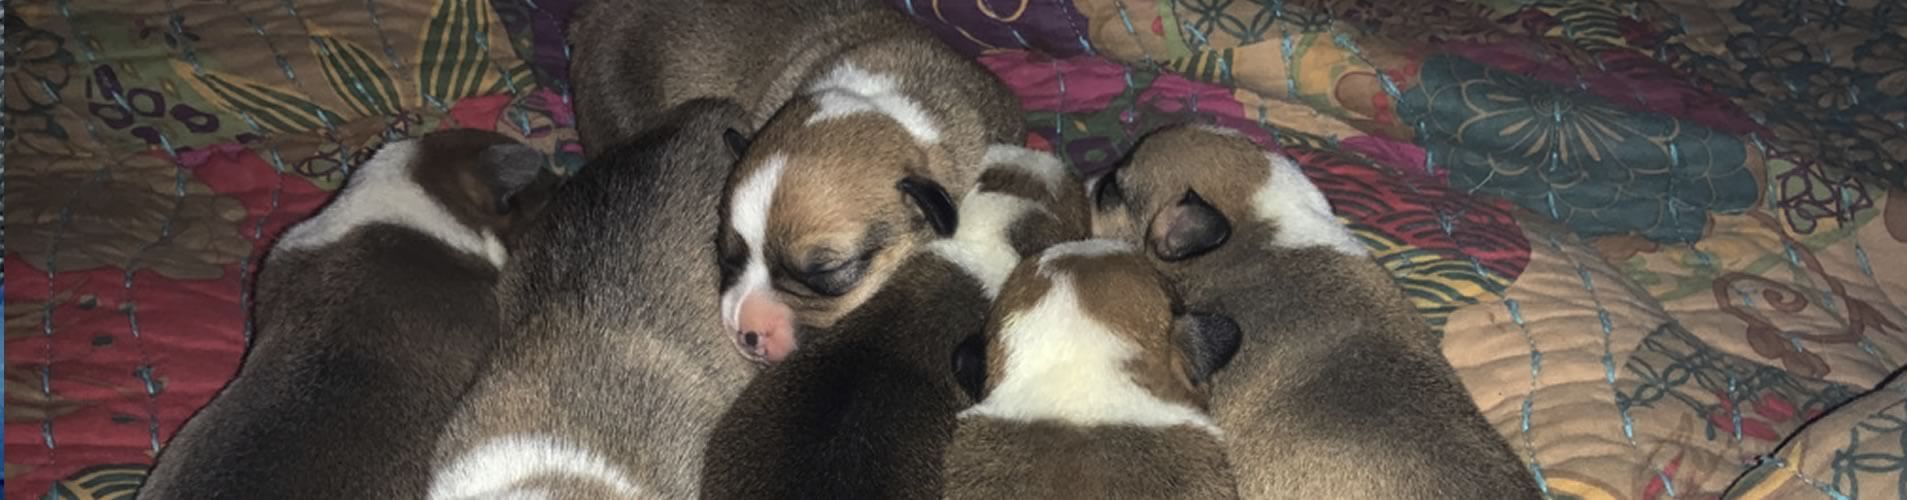 Corgi Puppies For Sale in Michigan